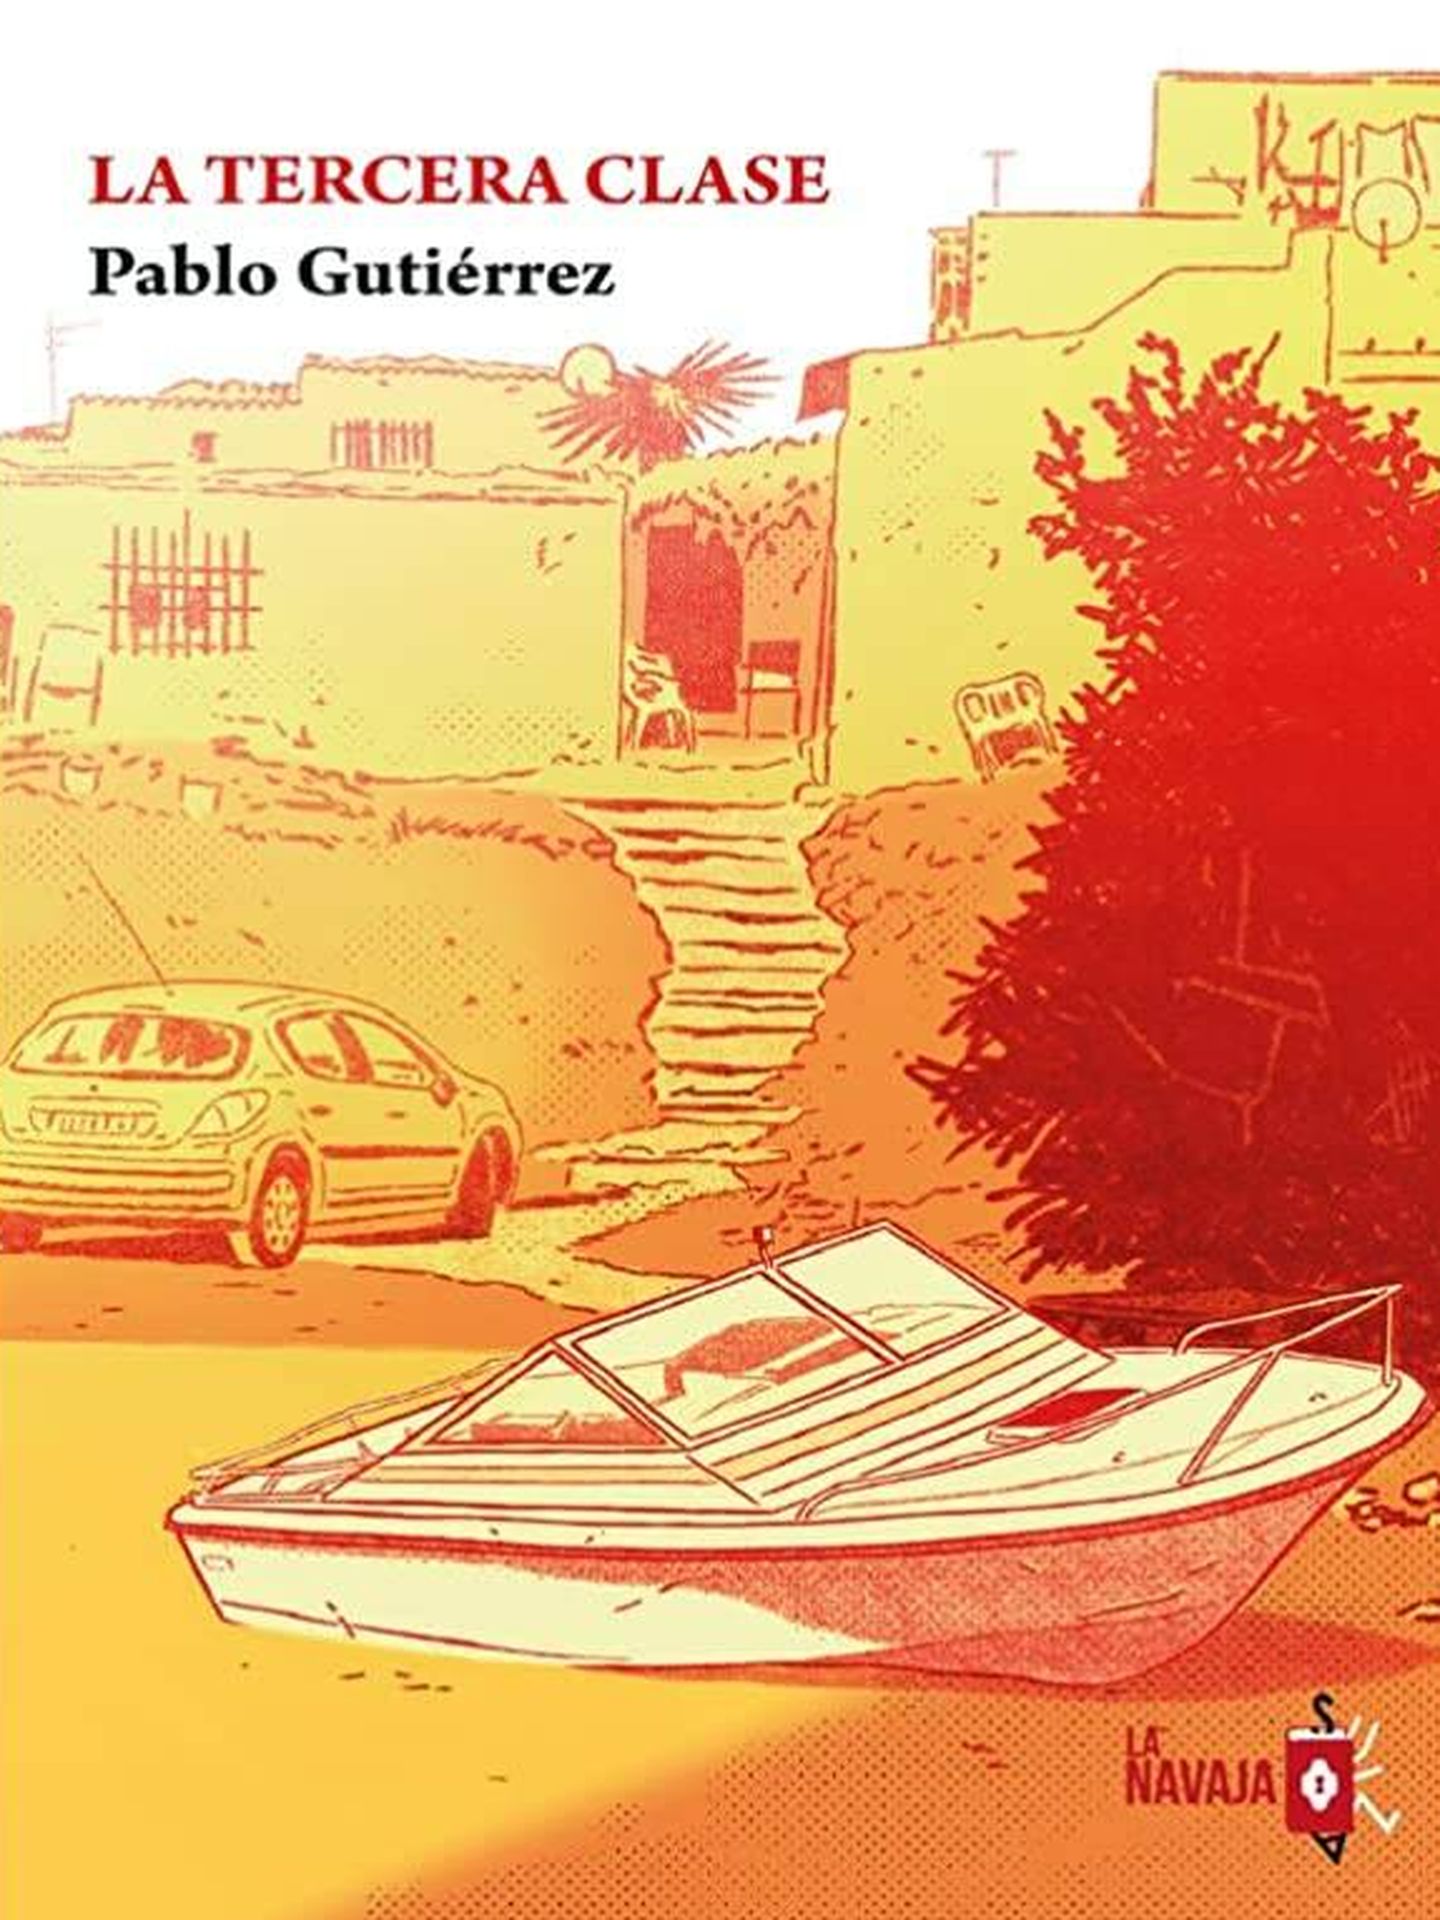 Portada de 'La tercera clase', la nueva novela de Pablo Gutiérrez. 